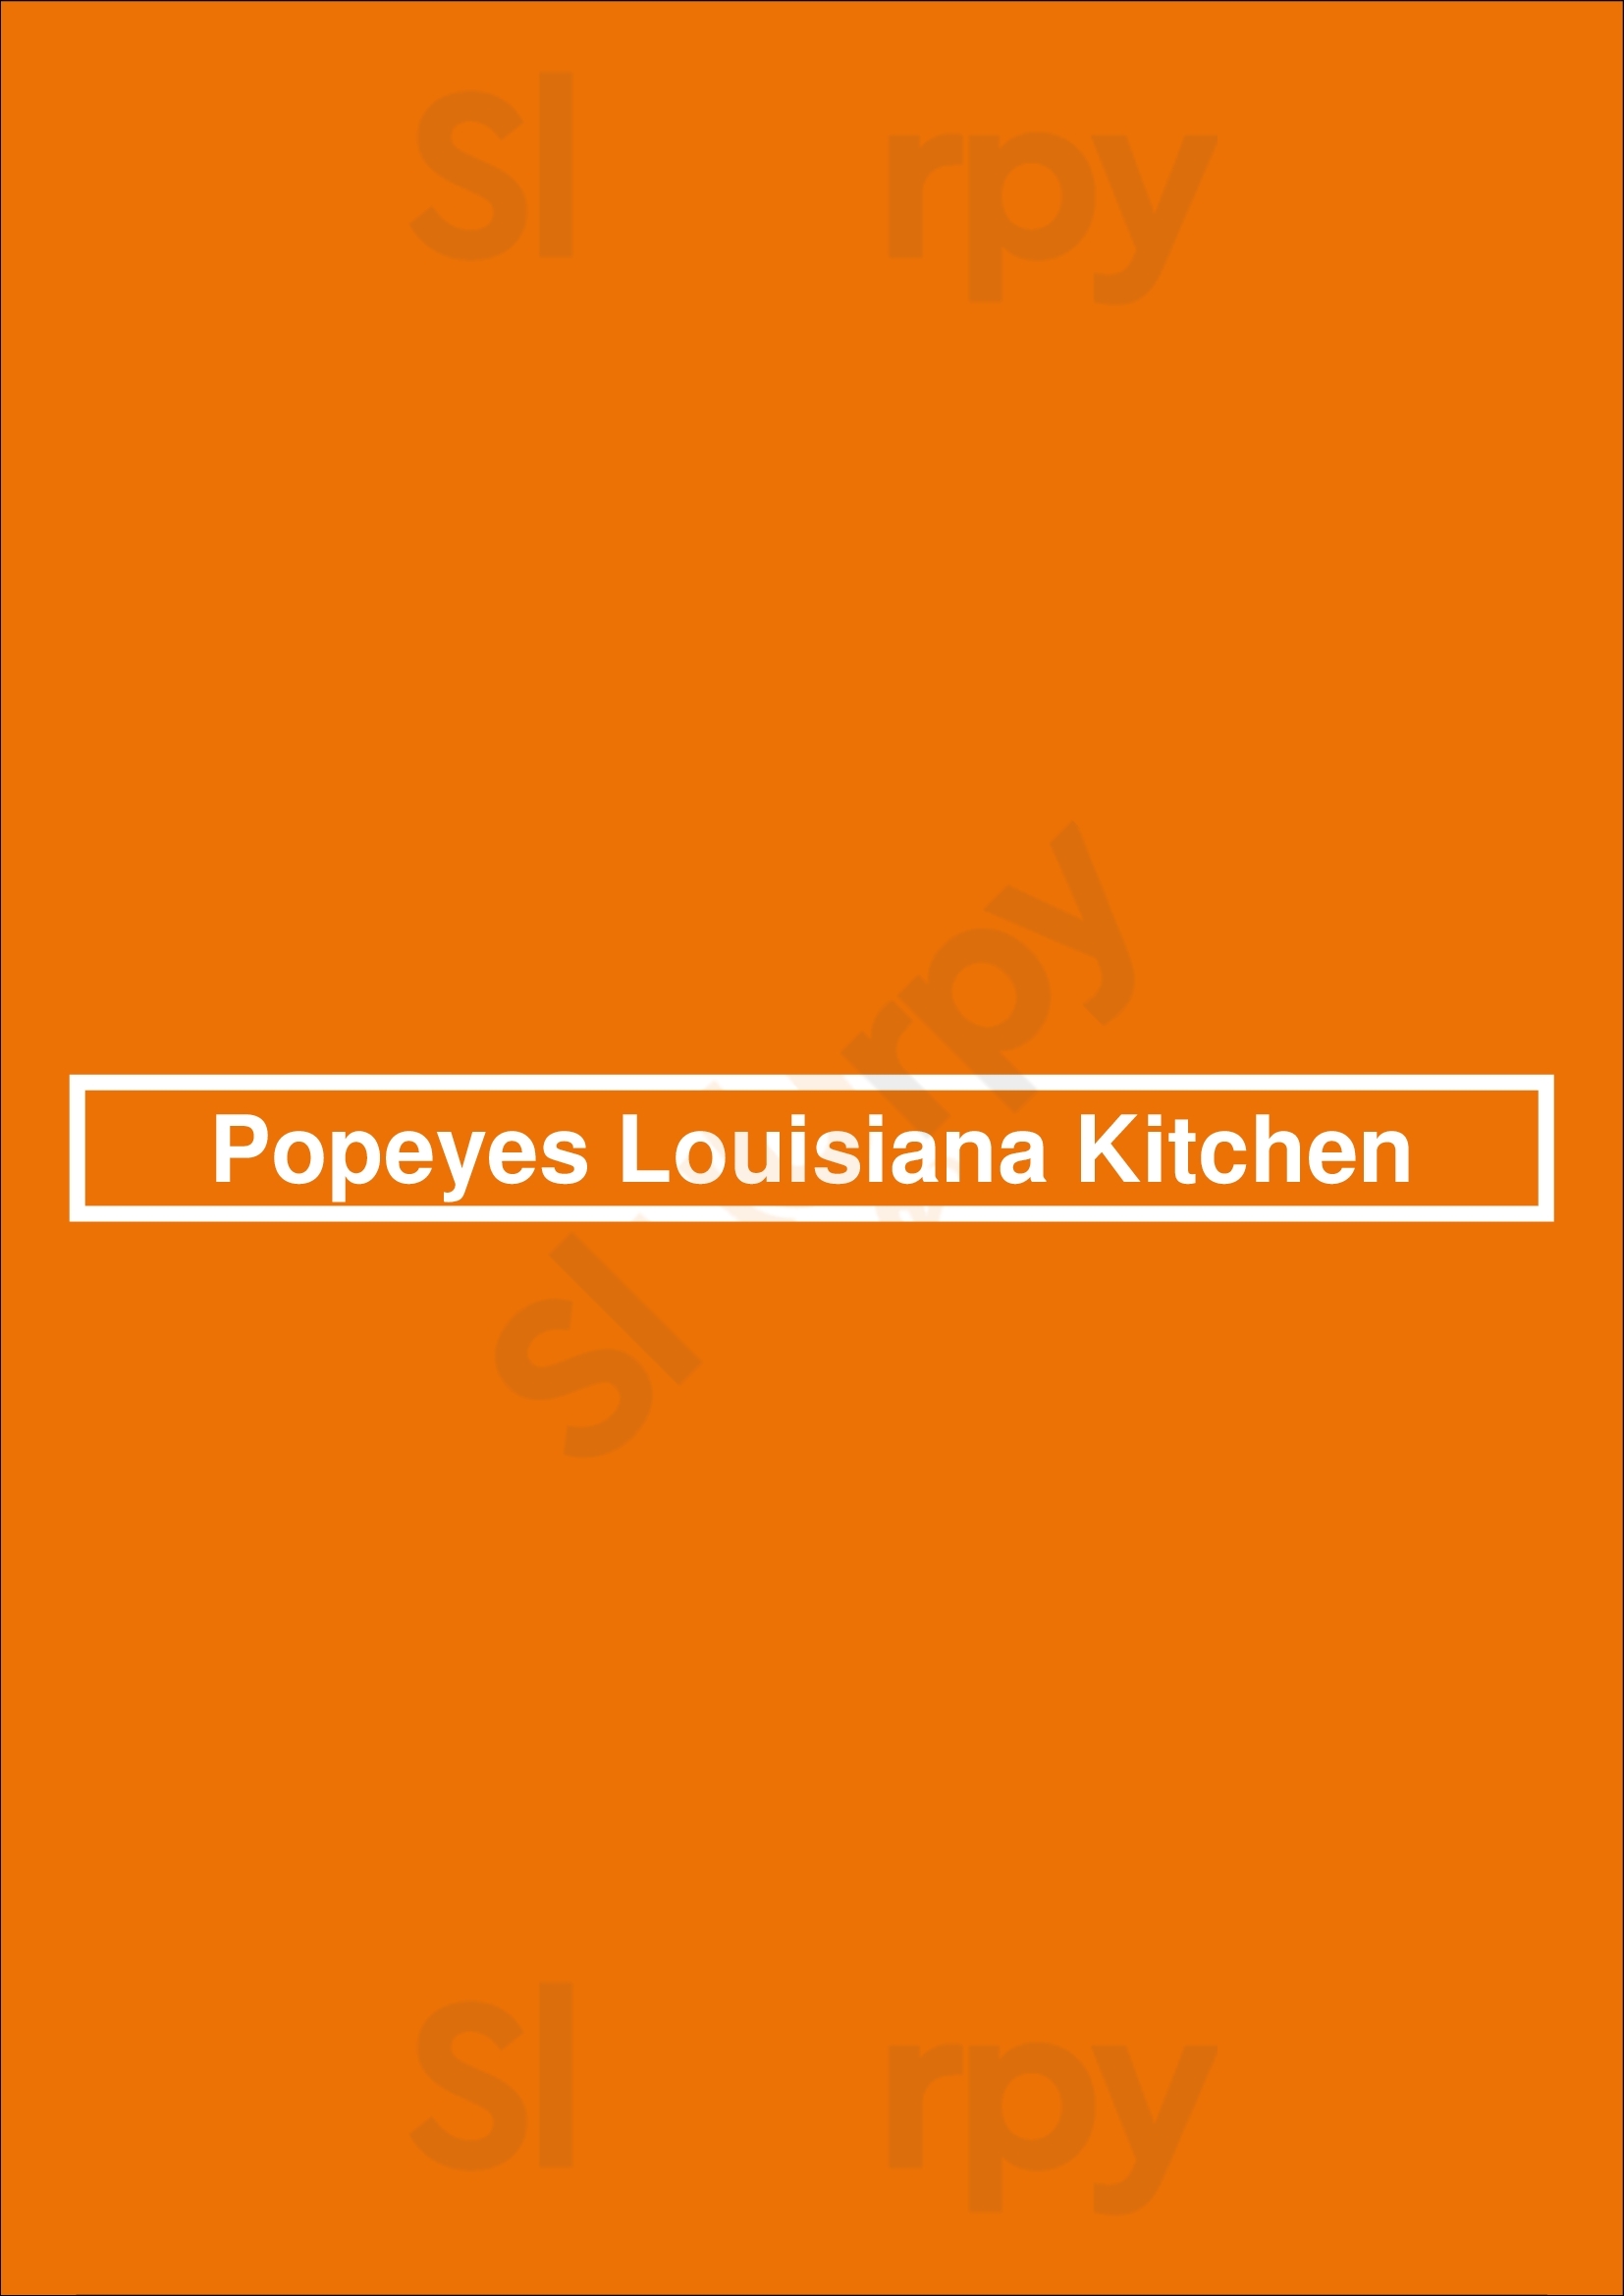 Popeyes Louisiana Kitchen London Menu - 1